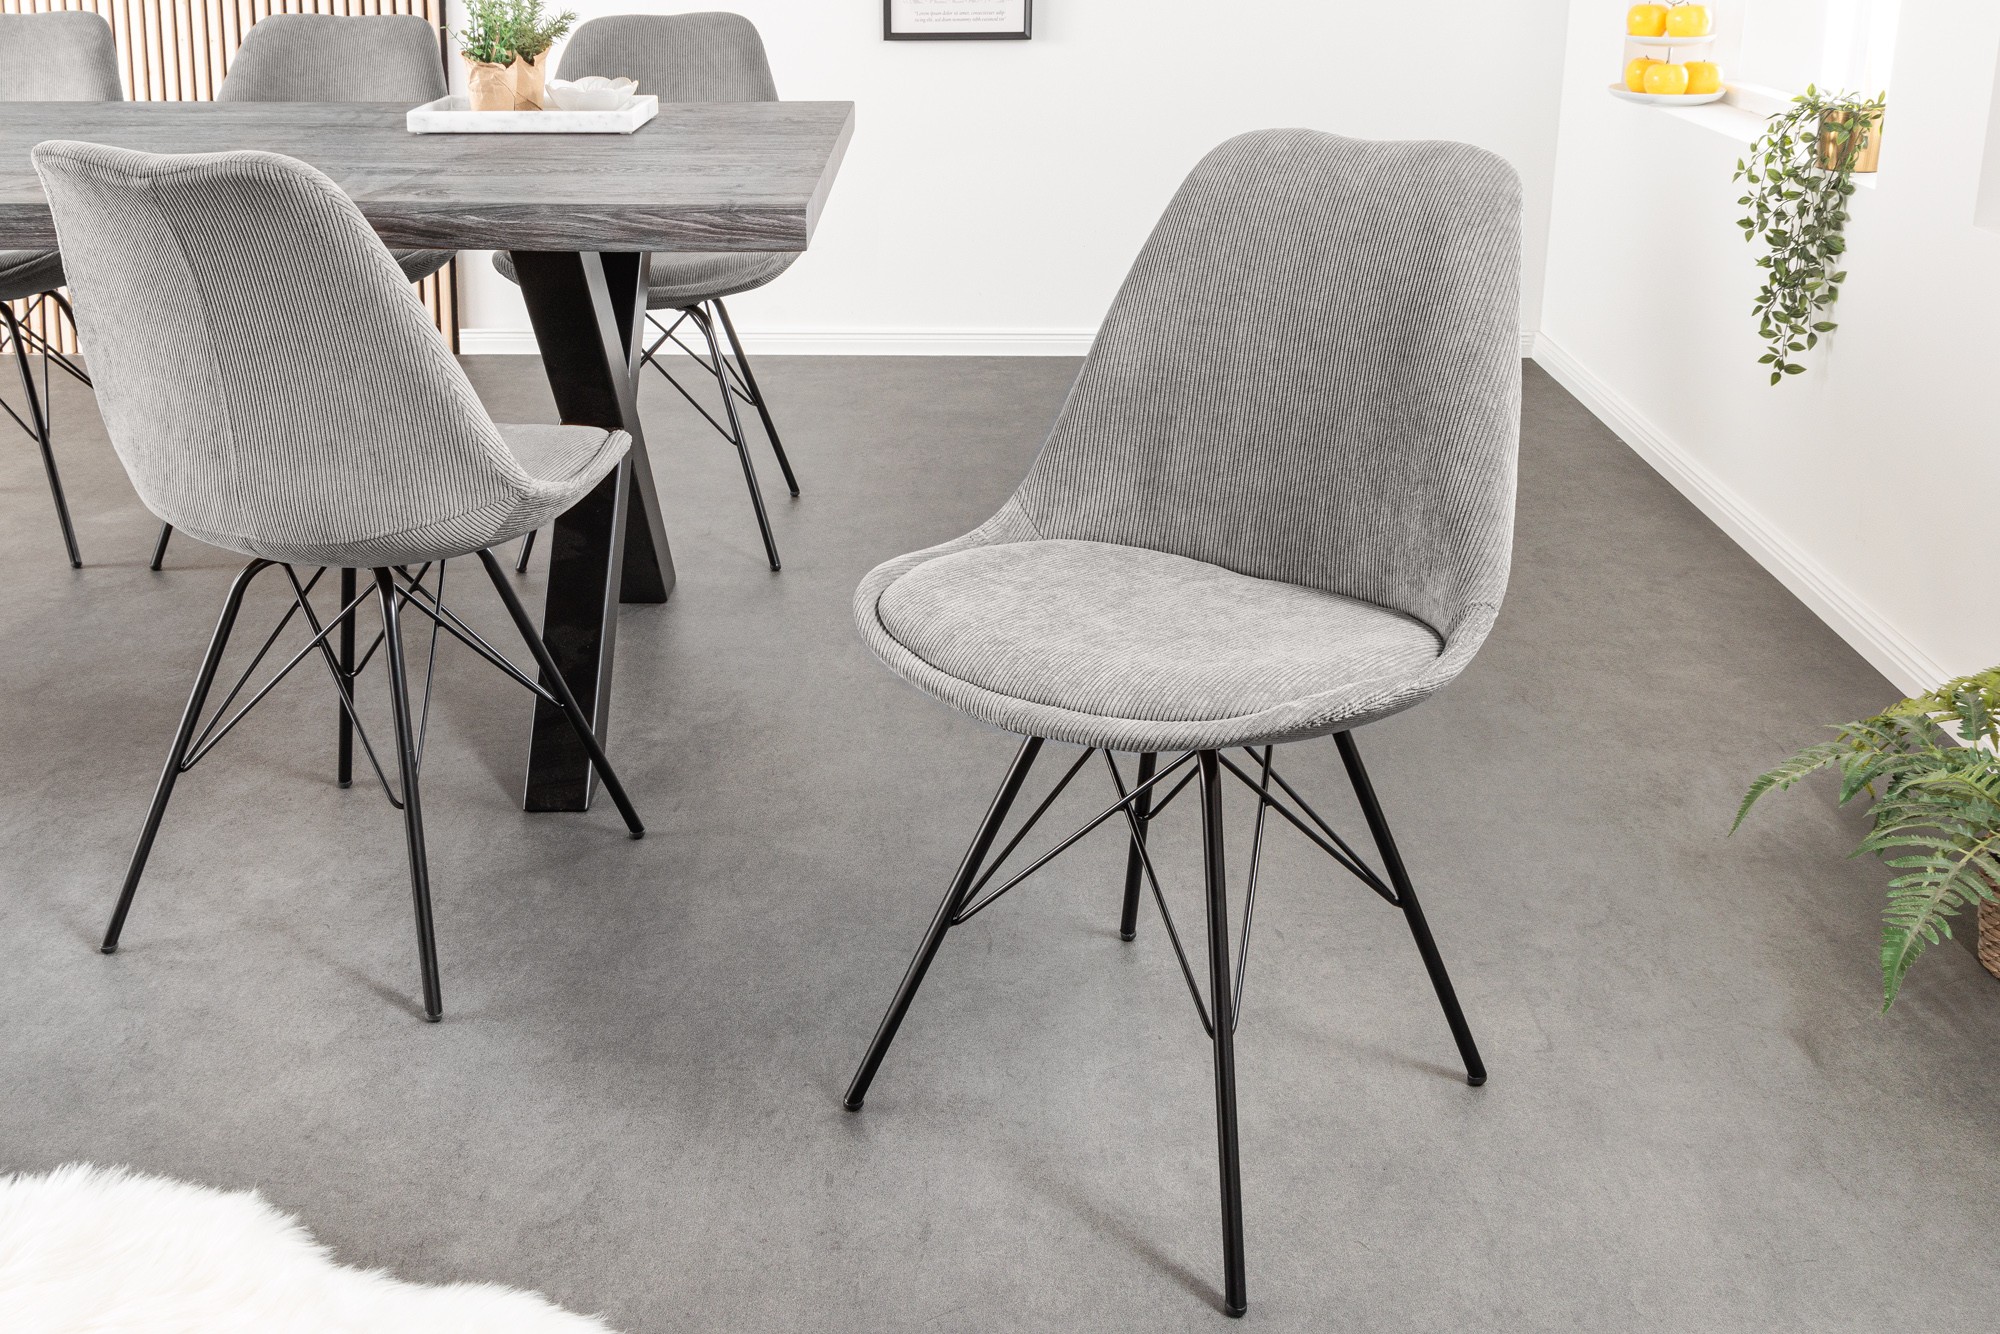 Estila Designová moderní židle Scandinavia s manšestrovým šedým čalouněním